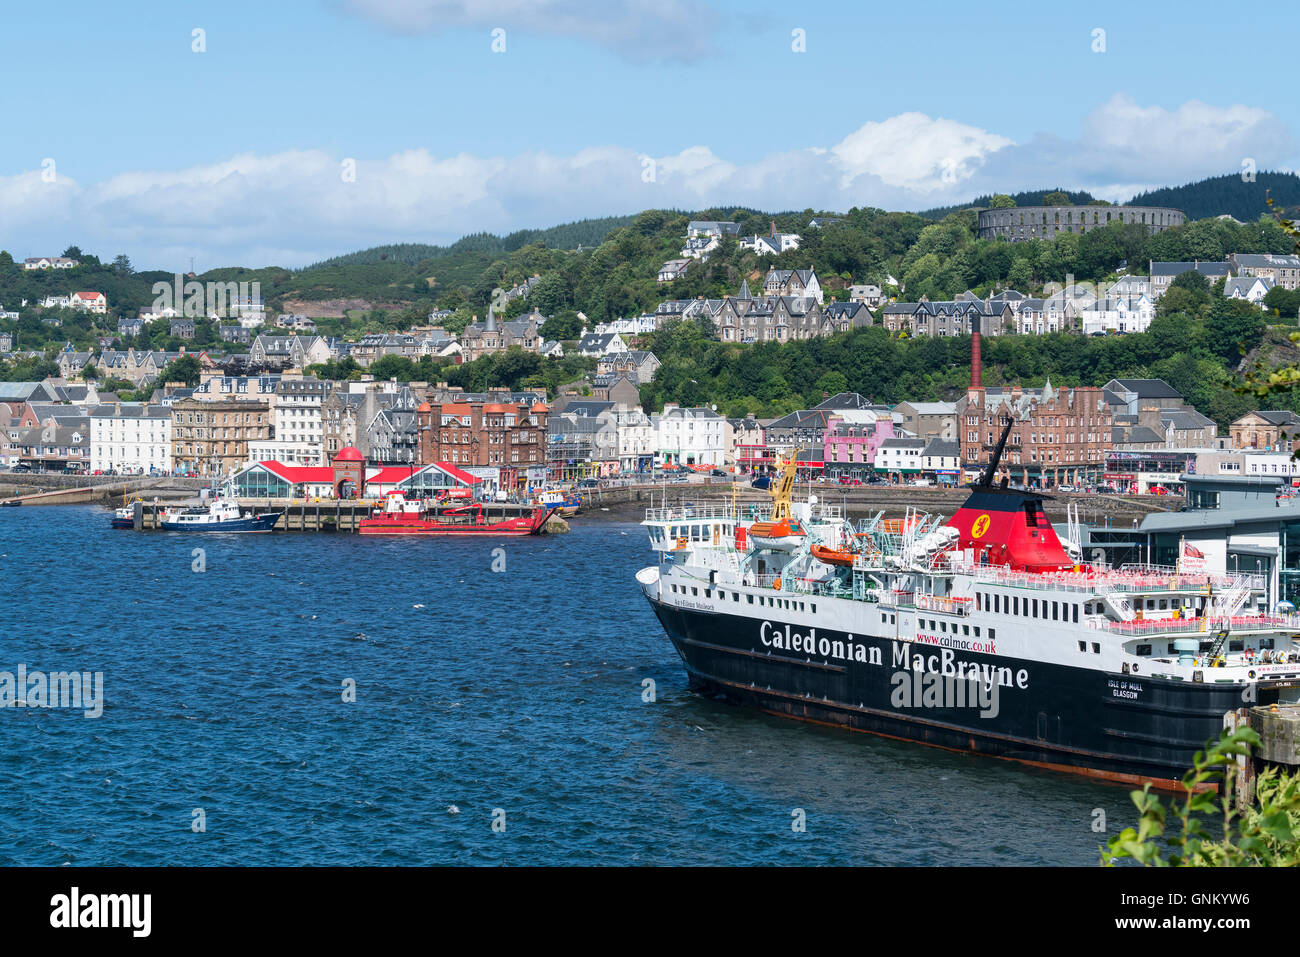 Vue de la ville d'Oban Caledonian Macbrayne avec ferry à Argyll and Bute, Ecosse, Royaume-Uni Banque D'Images